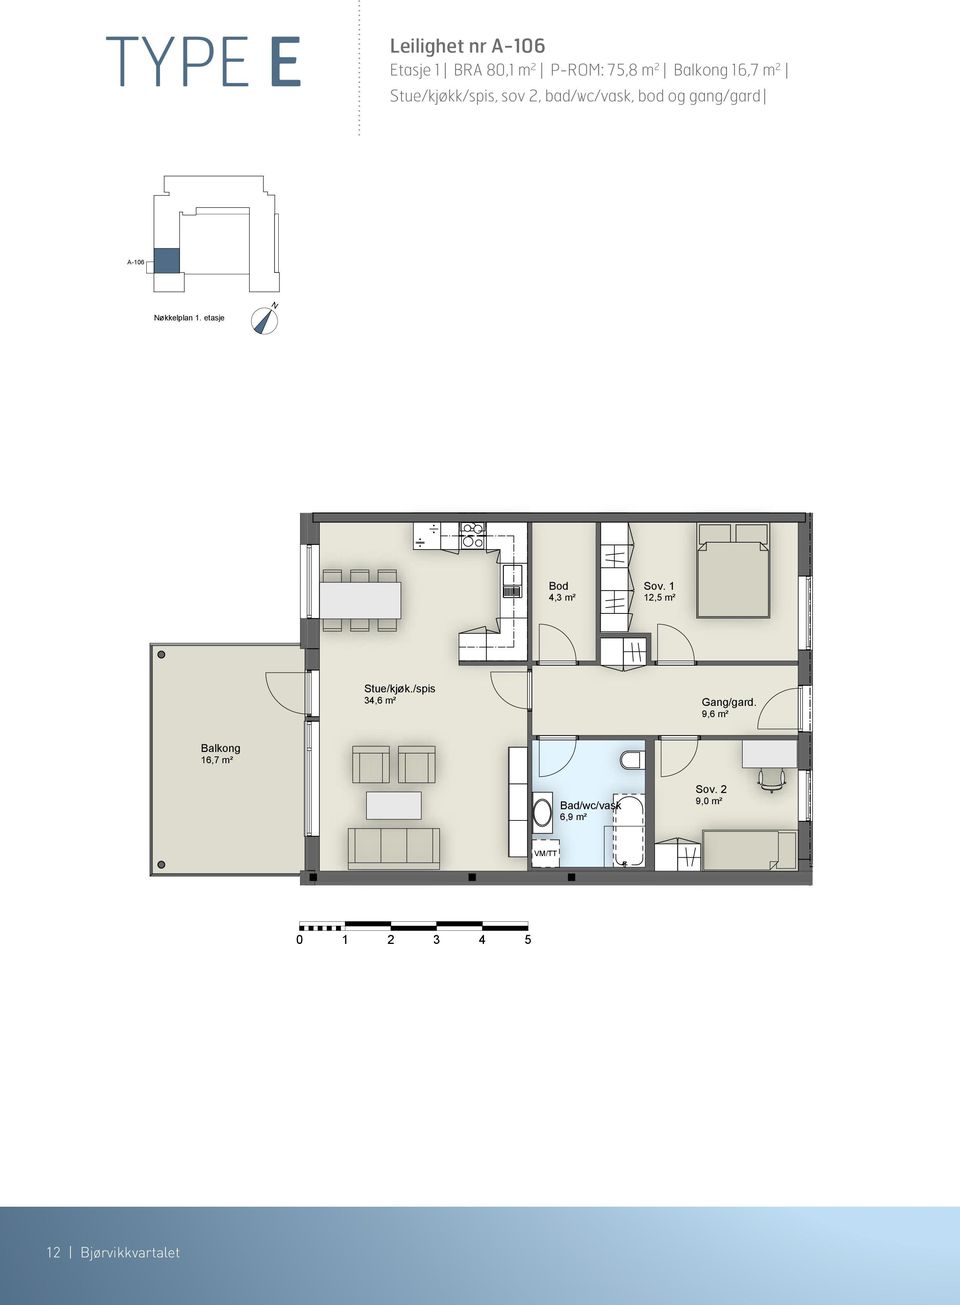 etasje 4,3 m² 12,5 m² Stue/kjøk./spis 34,6 m² 9,6 m² 16,7 m² Bad/wc/vask 6,9 m² Sov.